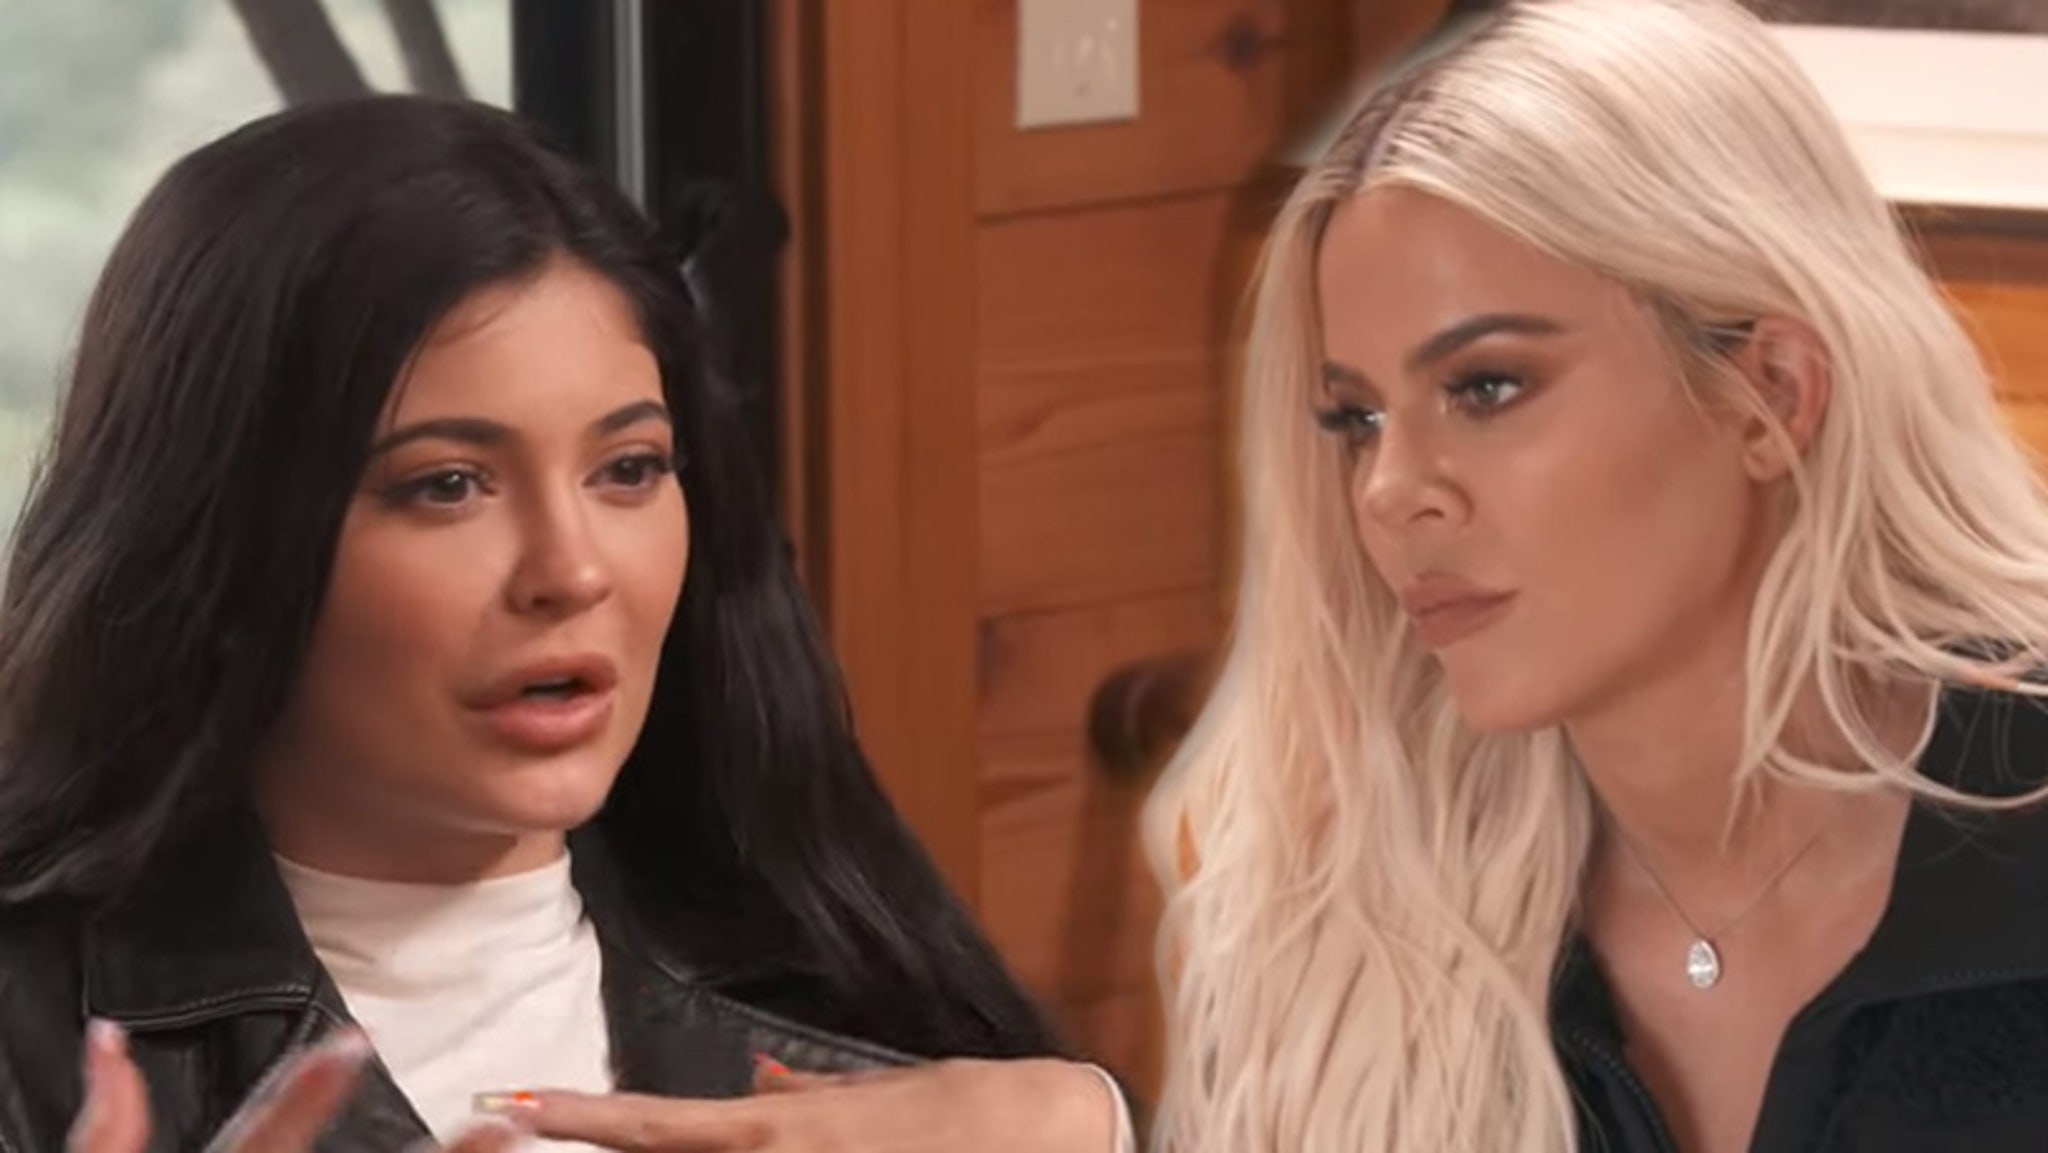 Kylie Jenner's Response When Khloe Asks if She Misses Jordyn Woods